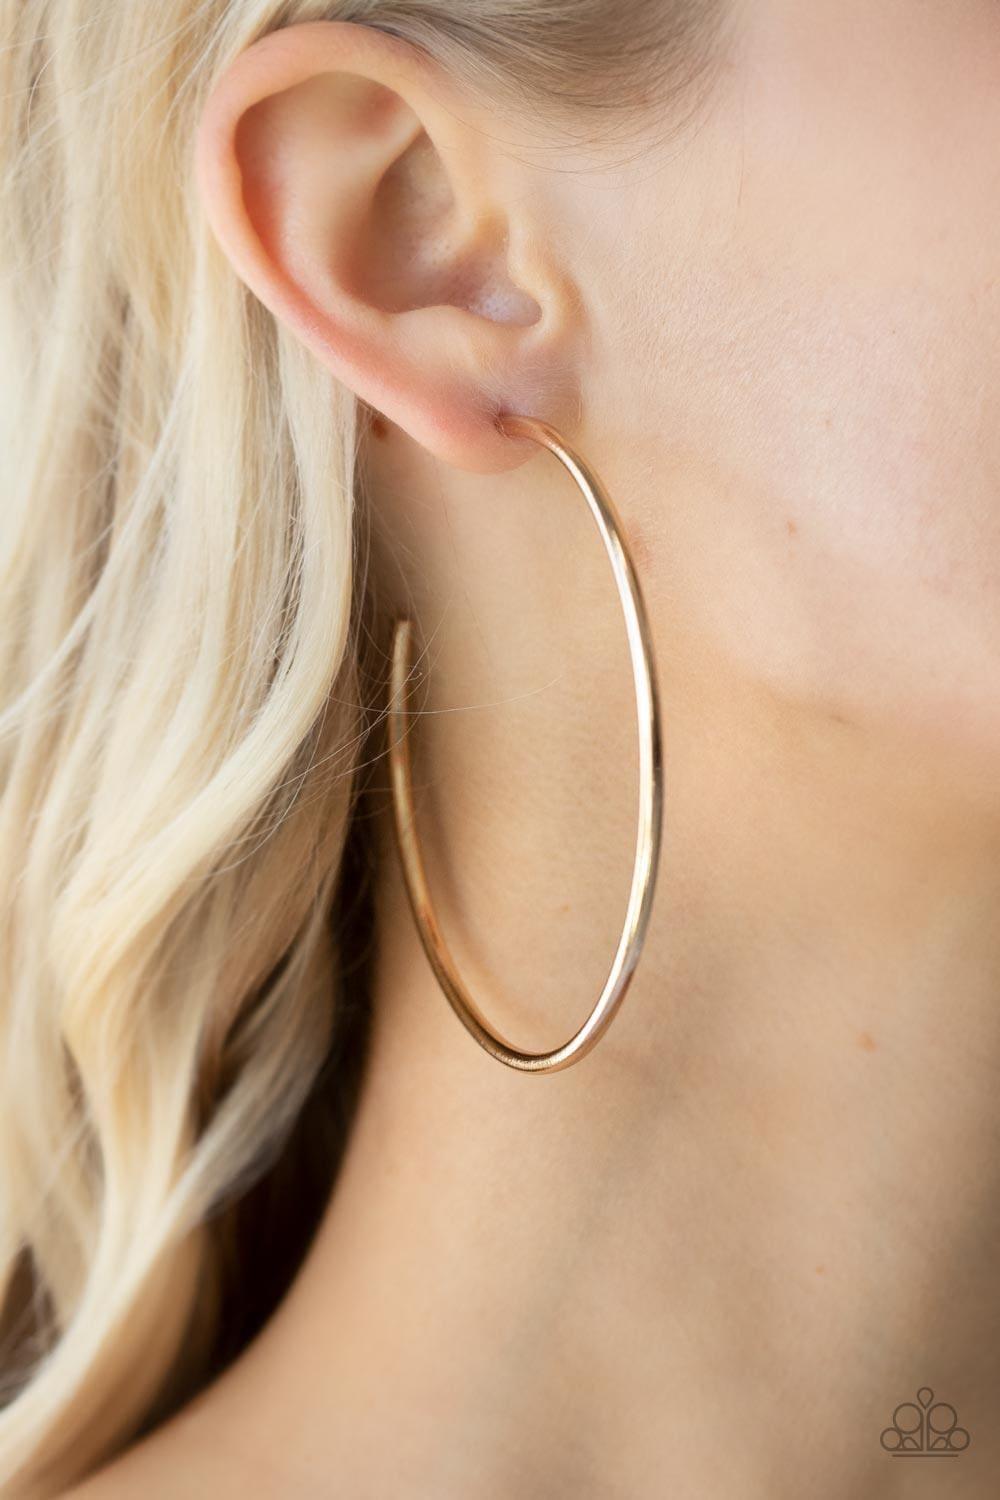 Paparazzi Accessories - Mega Metro - Gold Hoop Earrings - Bling by JessieK